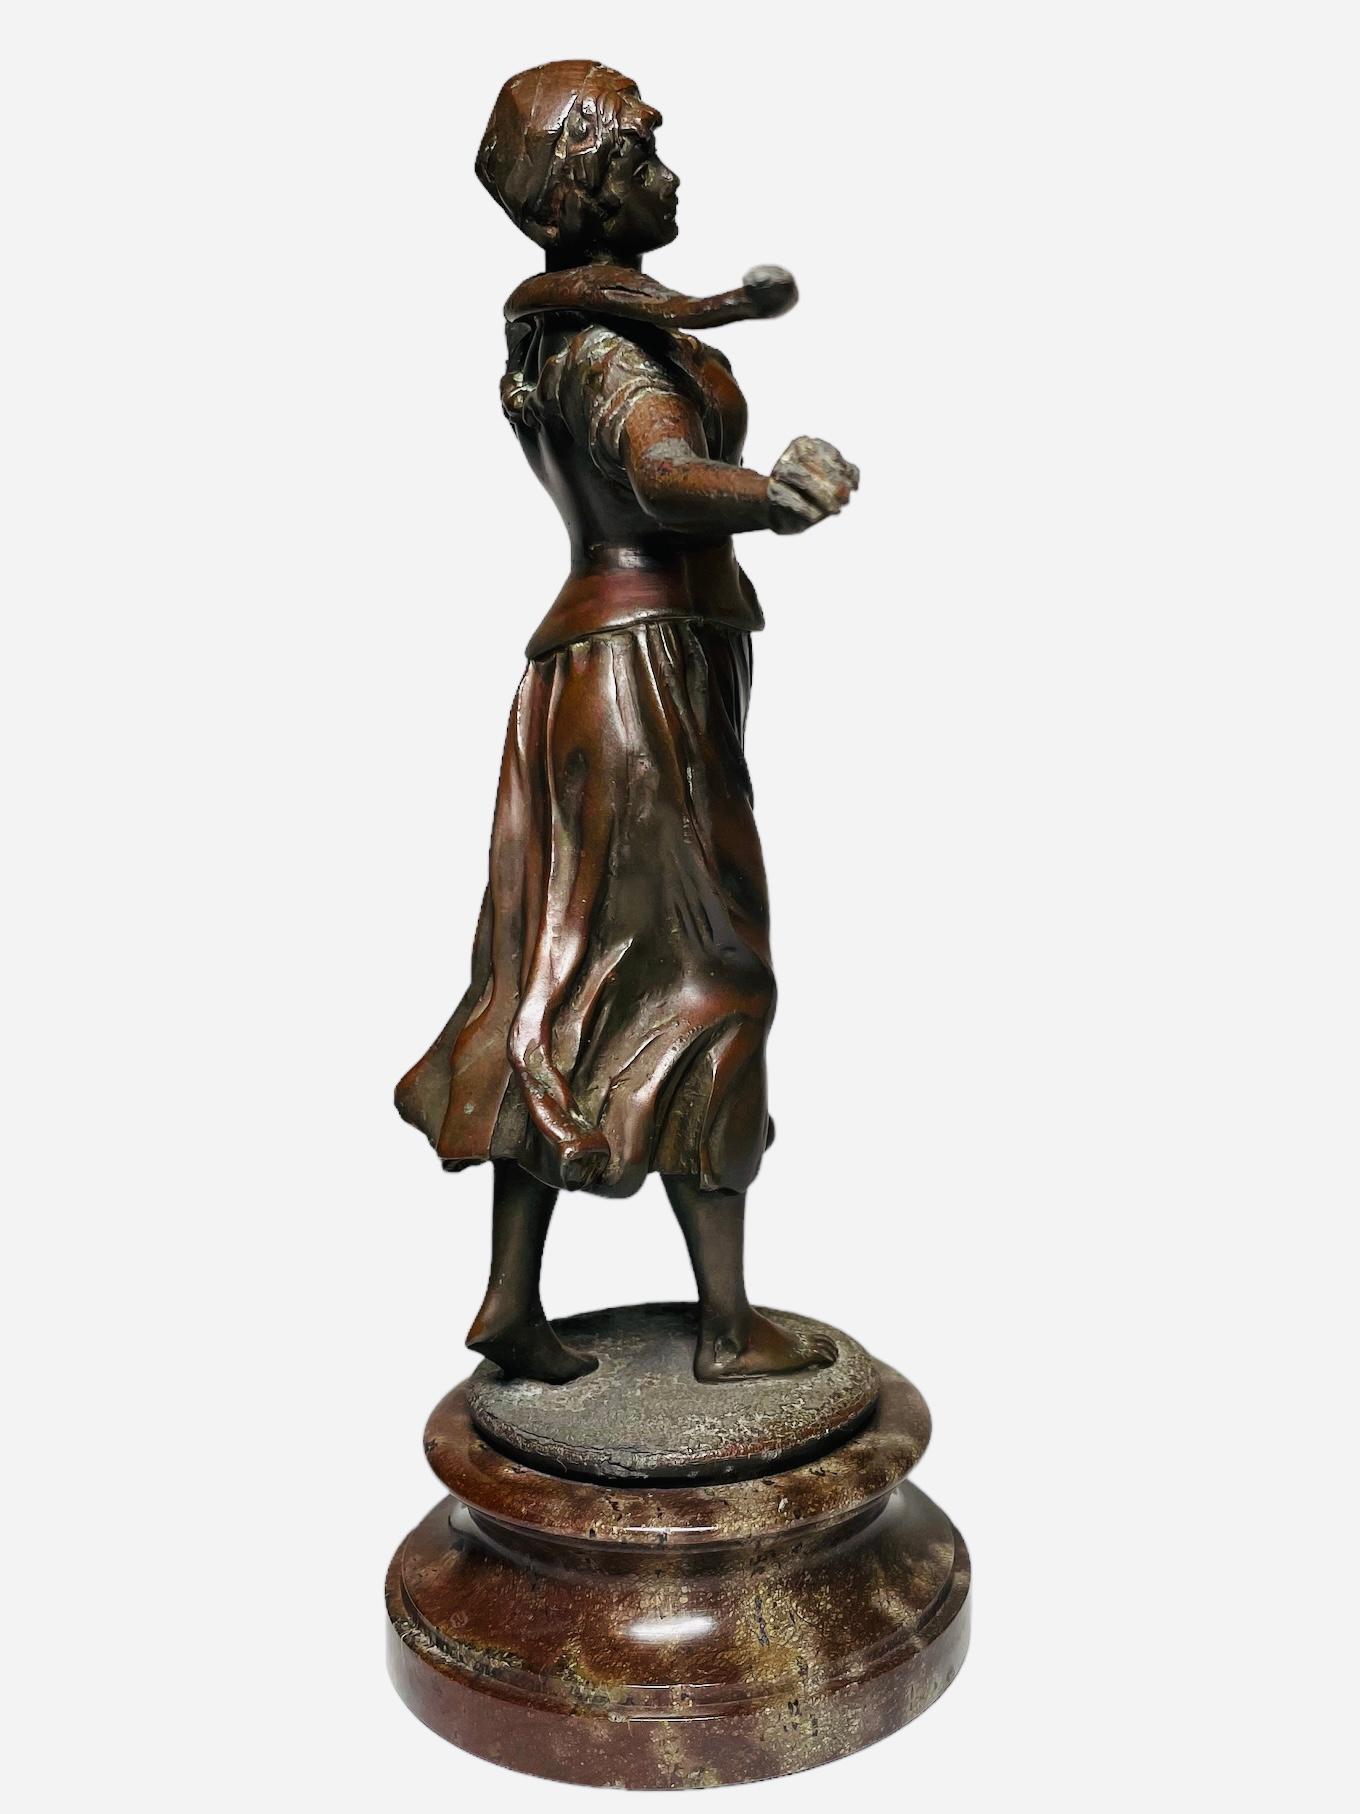 Il s'agit d'une sculpture en bronze représentant une femme porteuse d'eau. Elle représente une sculpture en bronze patiné d'une jeune paysanne aux pieds nus portant un bâton de bois sur la nuque. La sculpture est posée sur une large base ronde en